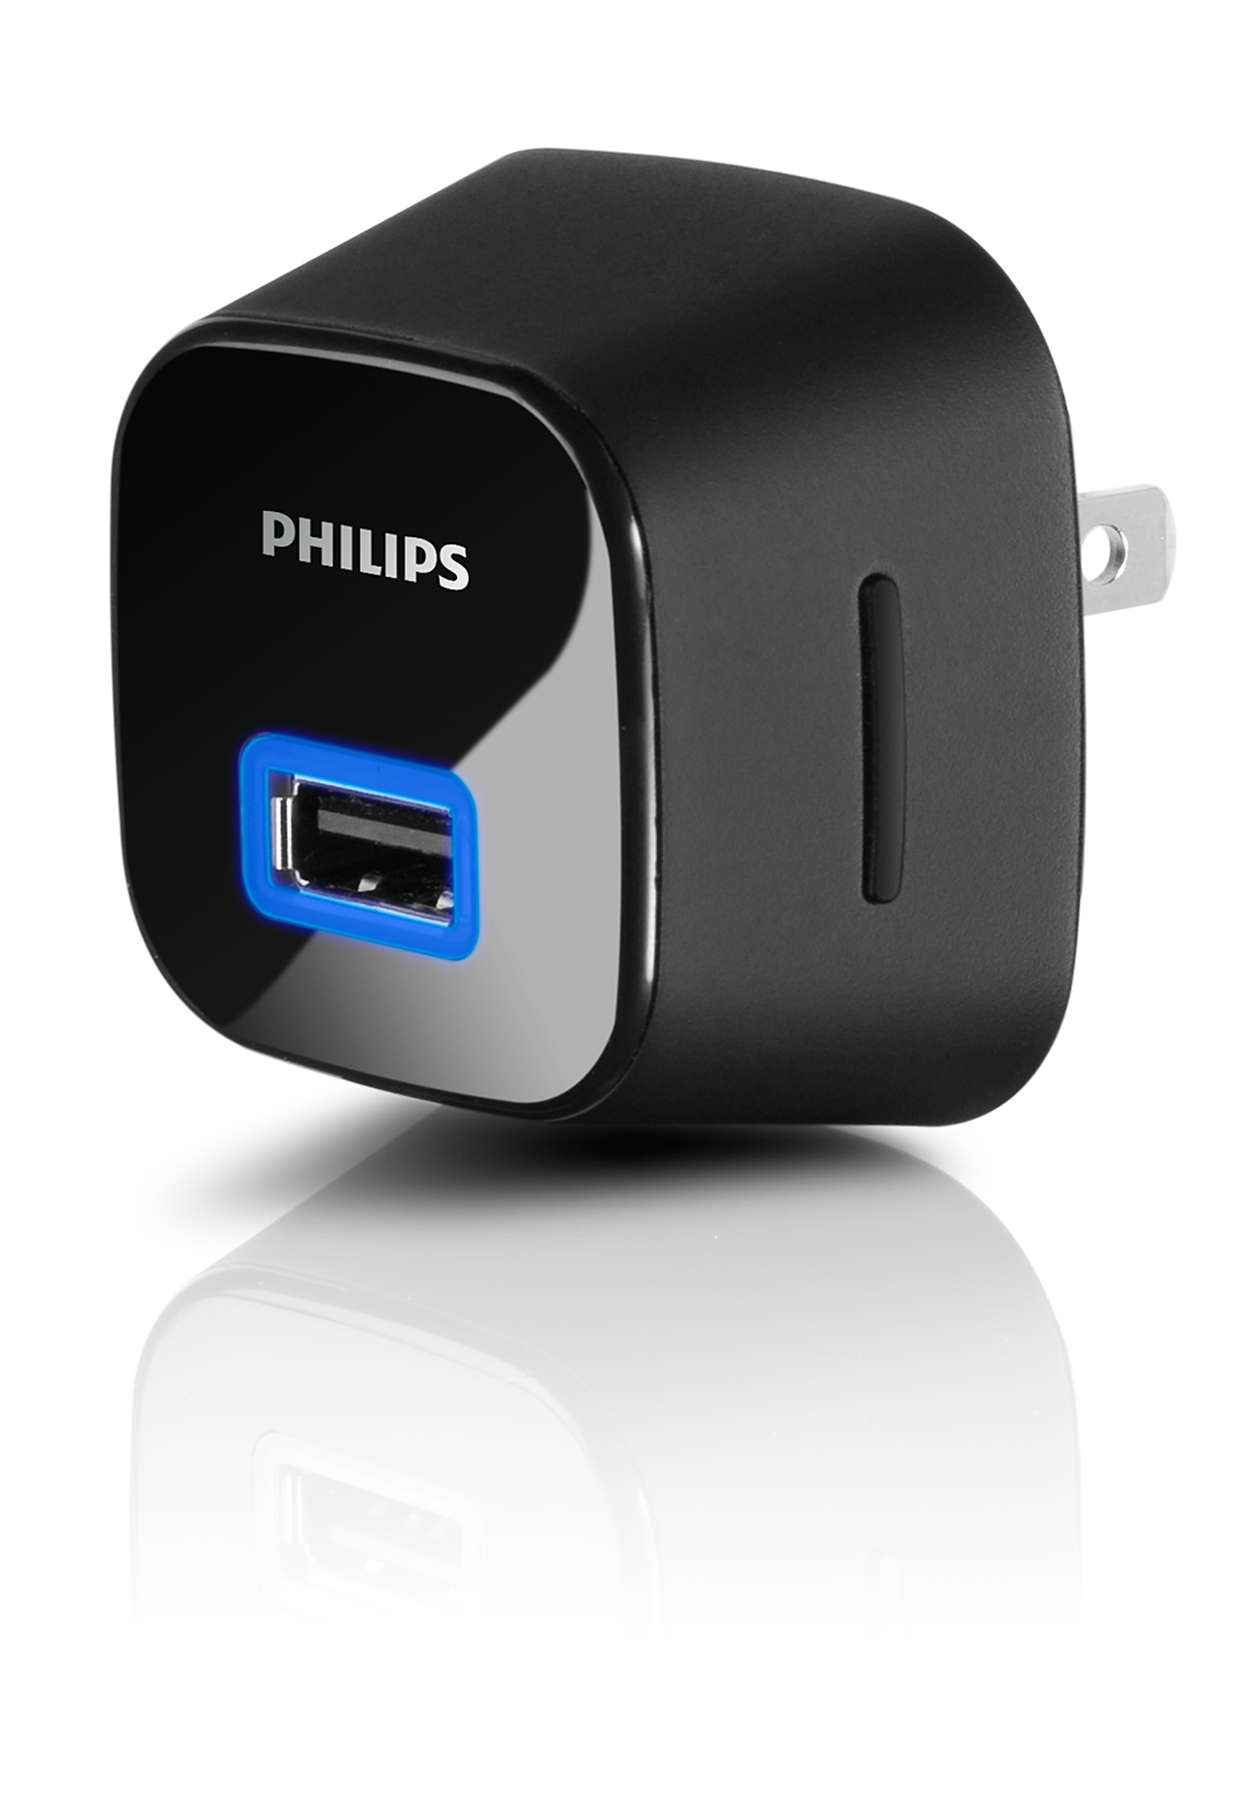 Зарядка телефона филипс. Многофункциональная зарядка для телефона. Зарядка Philips. Универсальное зарядное устройство. Компактная USB зарядка.